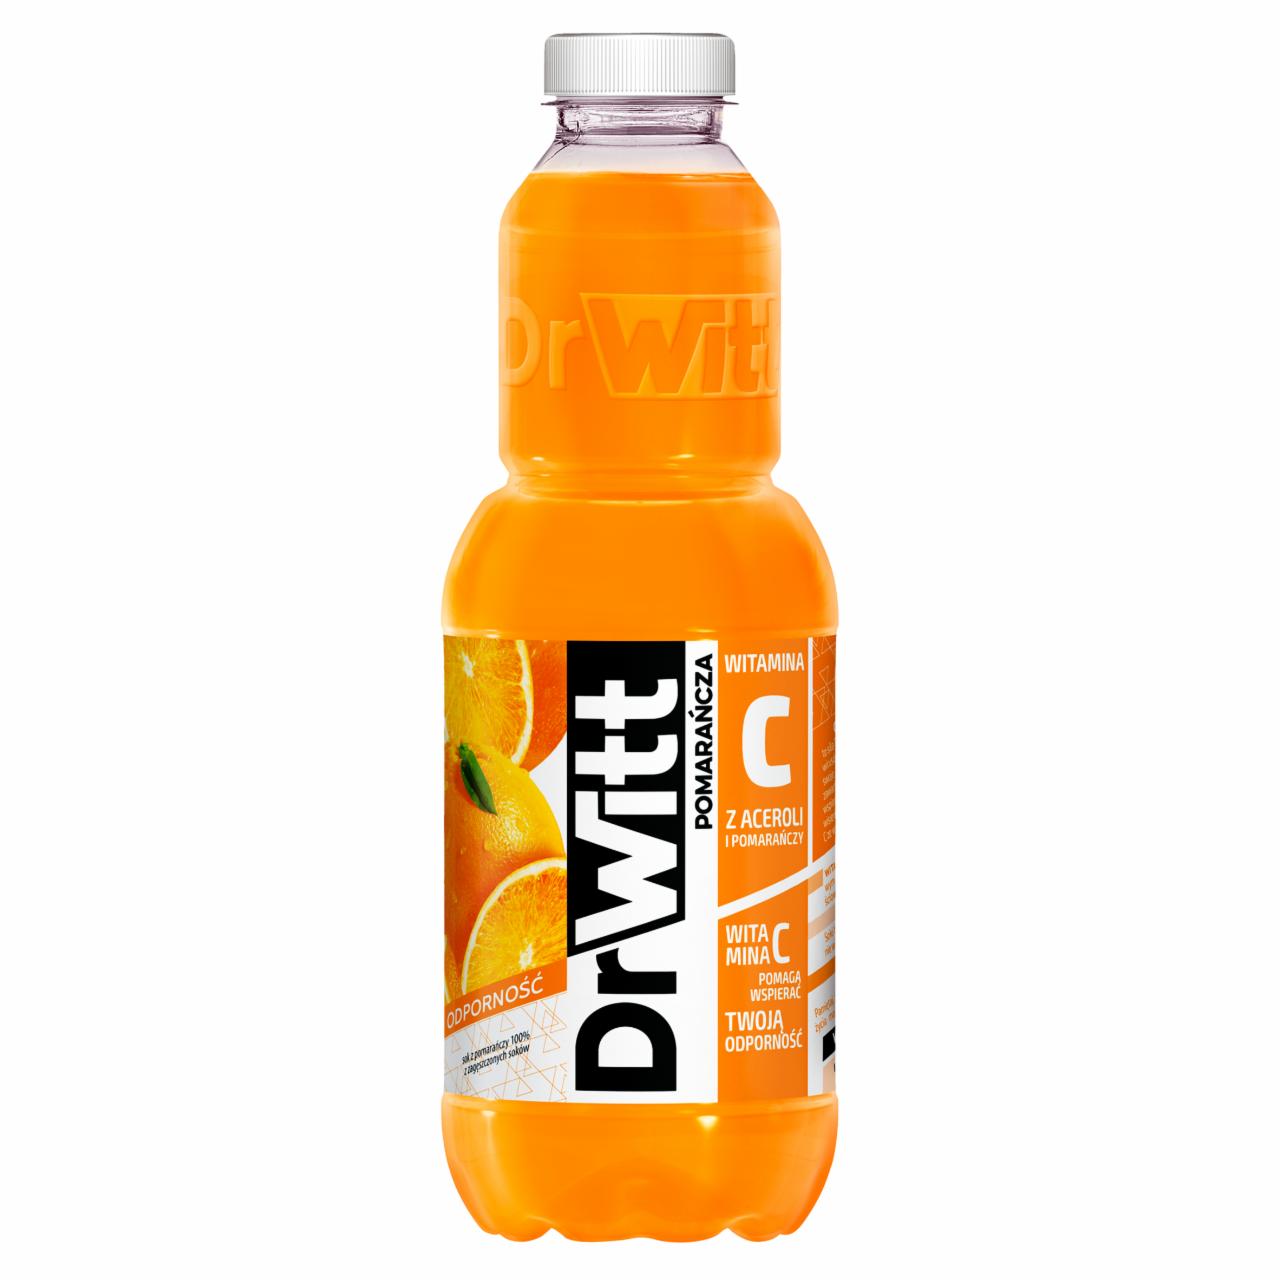 Zdjęcia - DrWitt Premium Odporność Sok 100% pomarańcza 1 l